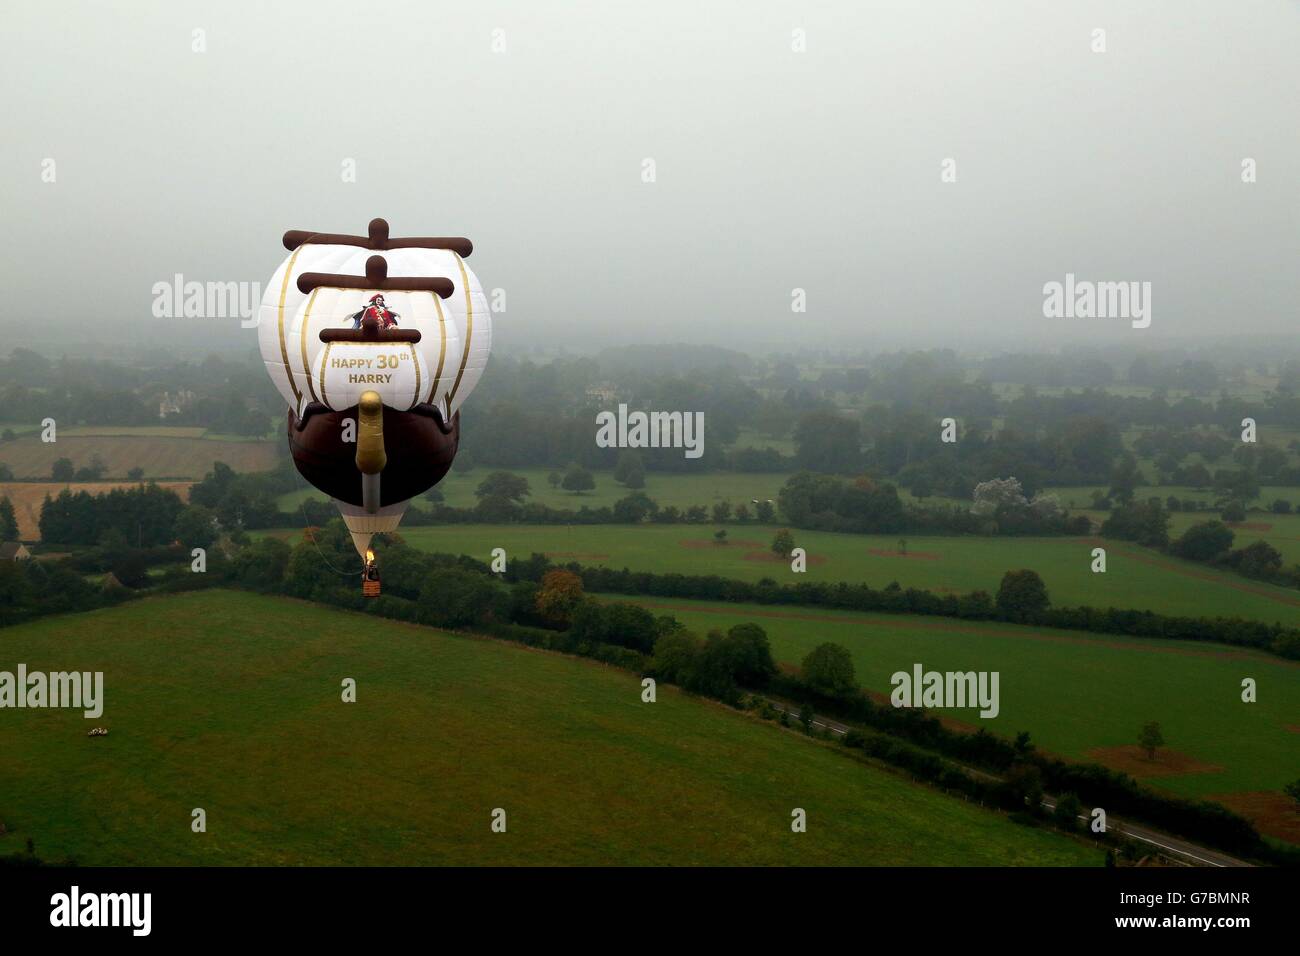 Una mongolfiera larga 128ft a forma di galeone, che è stato commissionato dal Capitano Morgan, vola vicino a Highgrove House vicino a Tetbury in Gloucestershire, per celebrare il trentesimo compleanno del principe Harry. Foto Stock